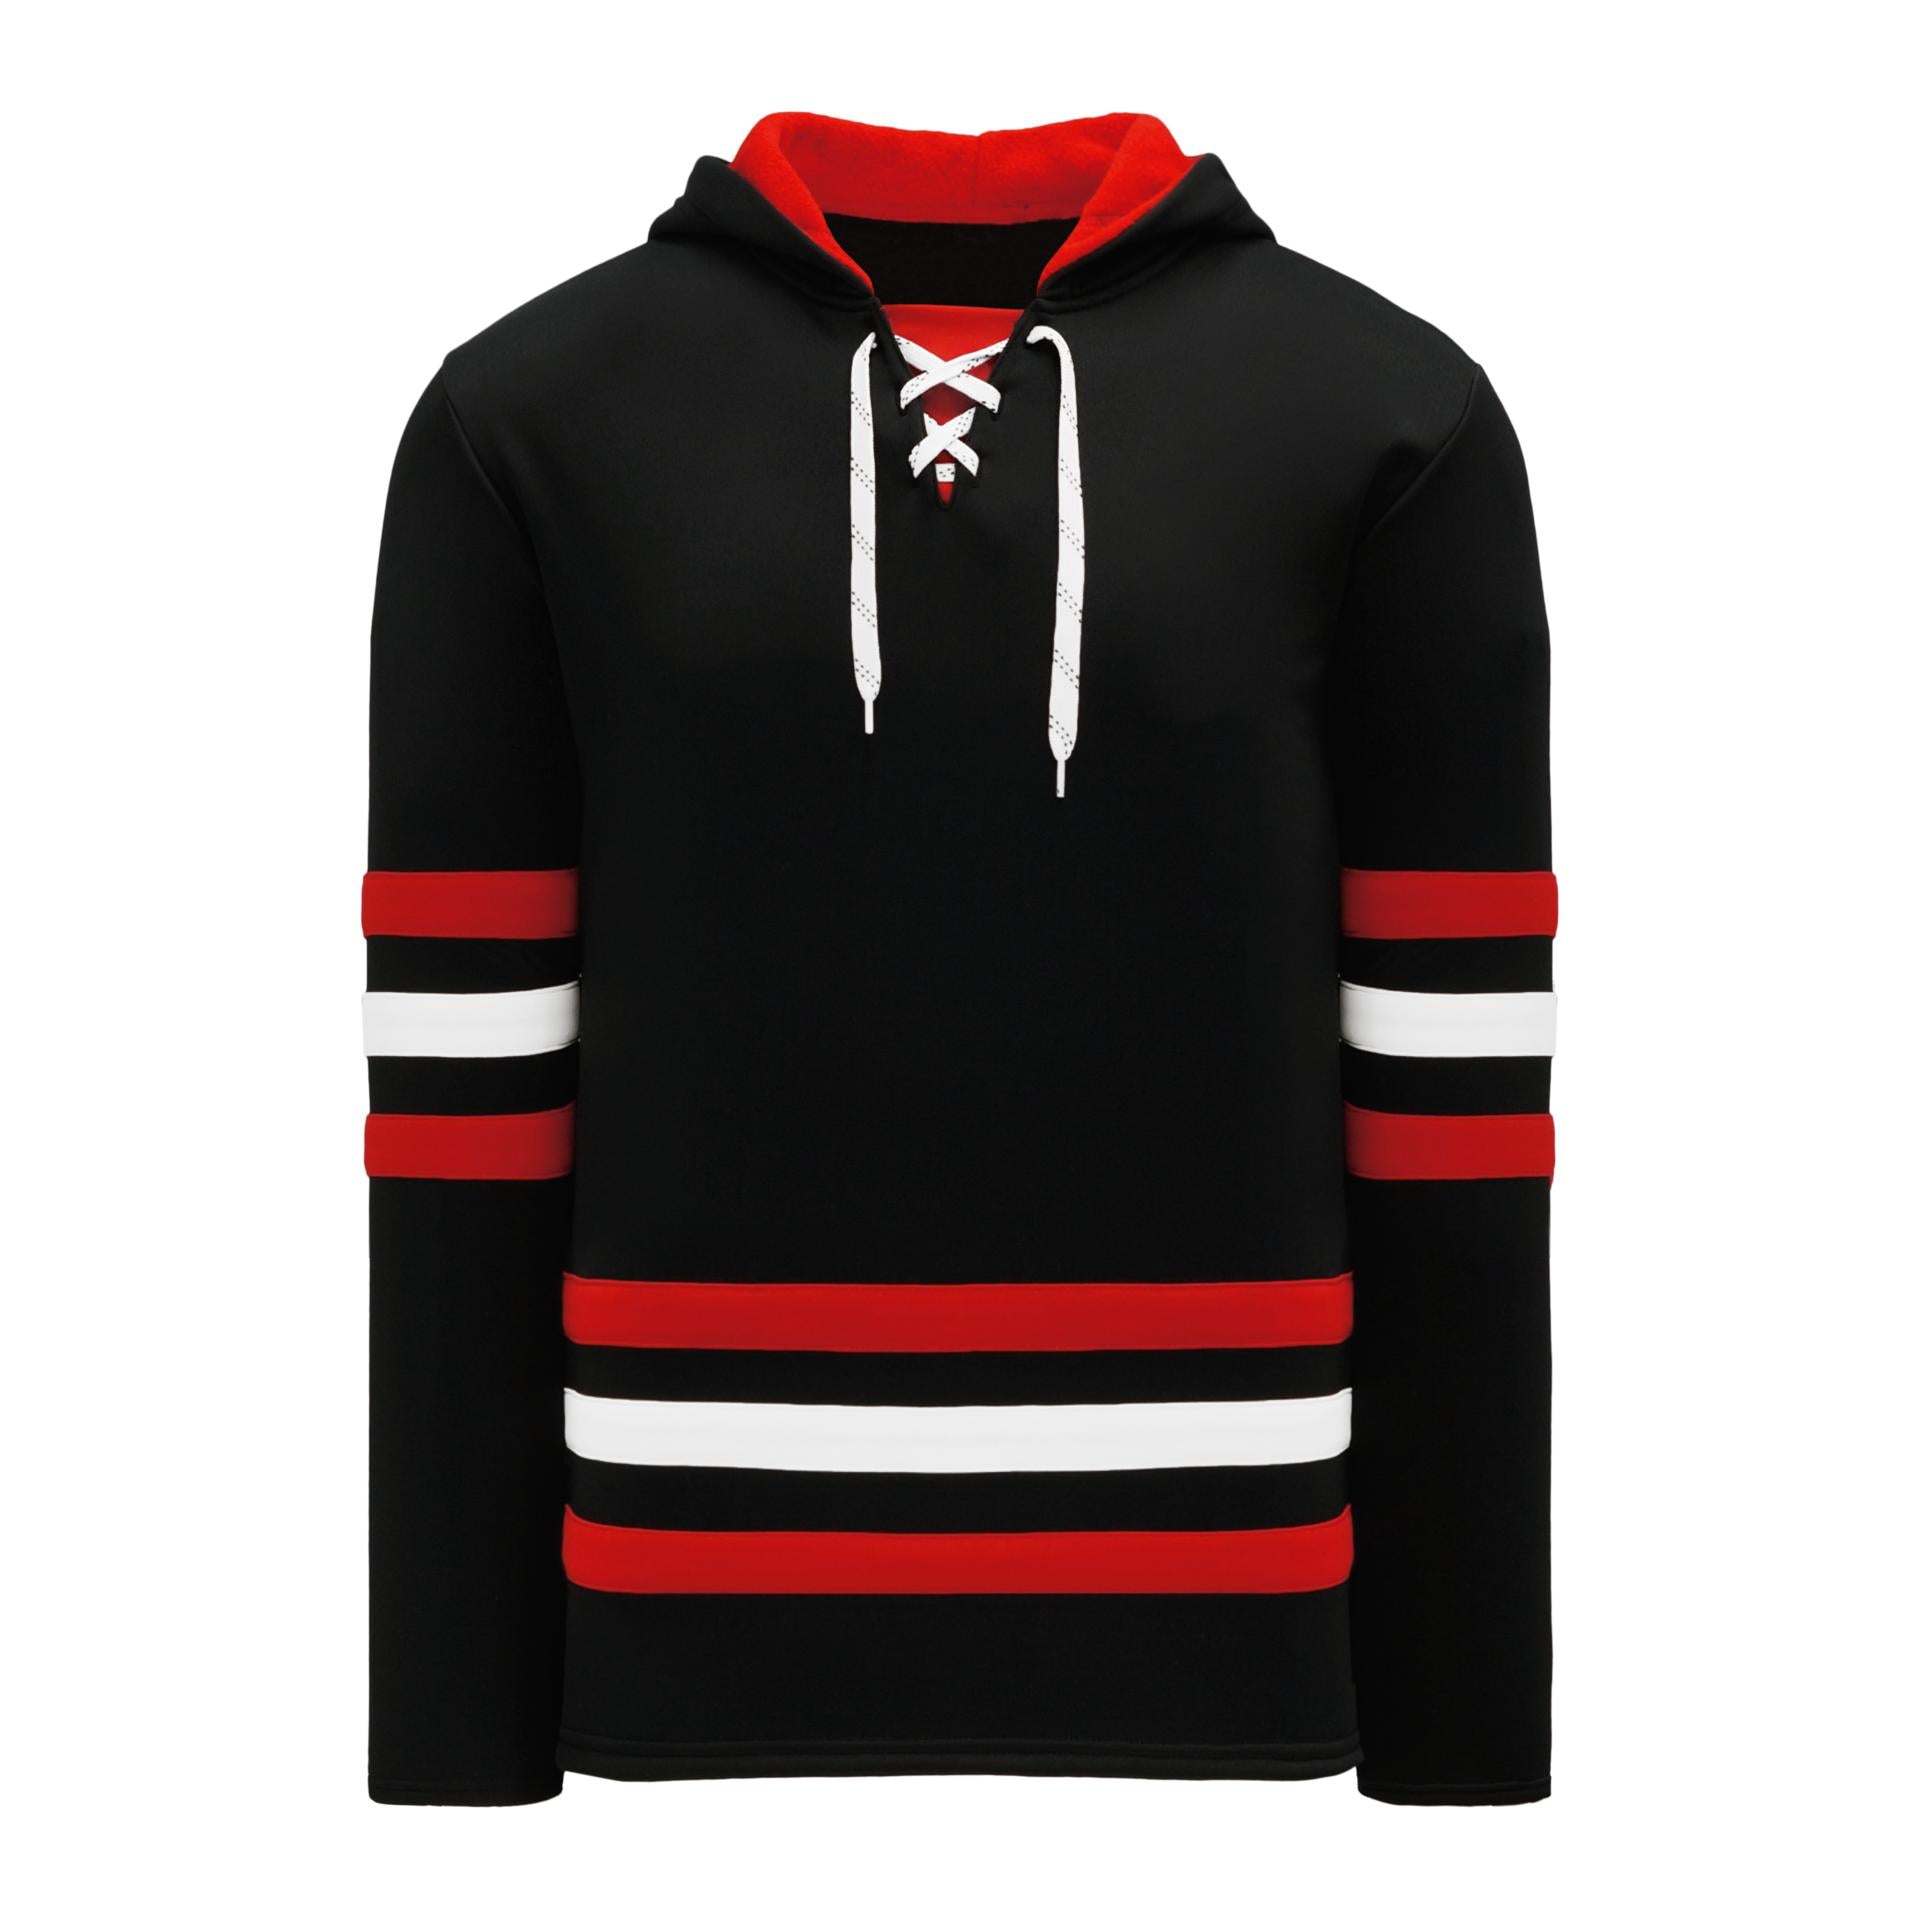 Adidas chicago blackhawks pride wordmark shirt, hoodie, longsleeve, sweater